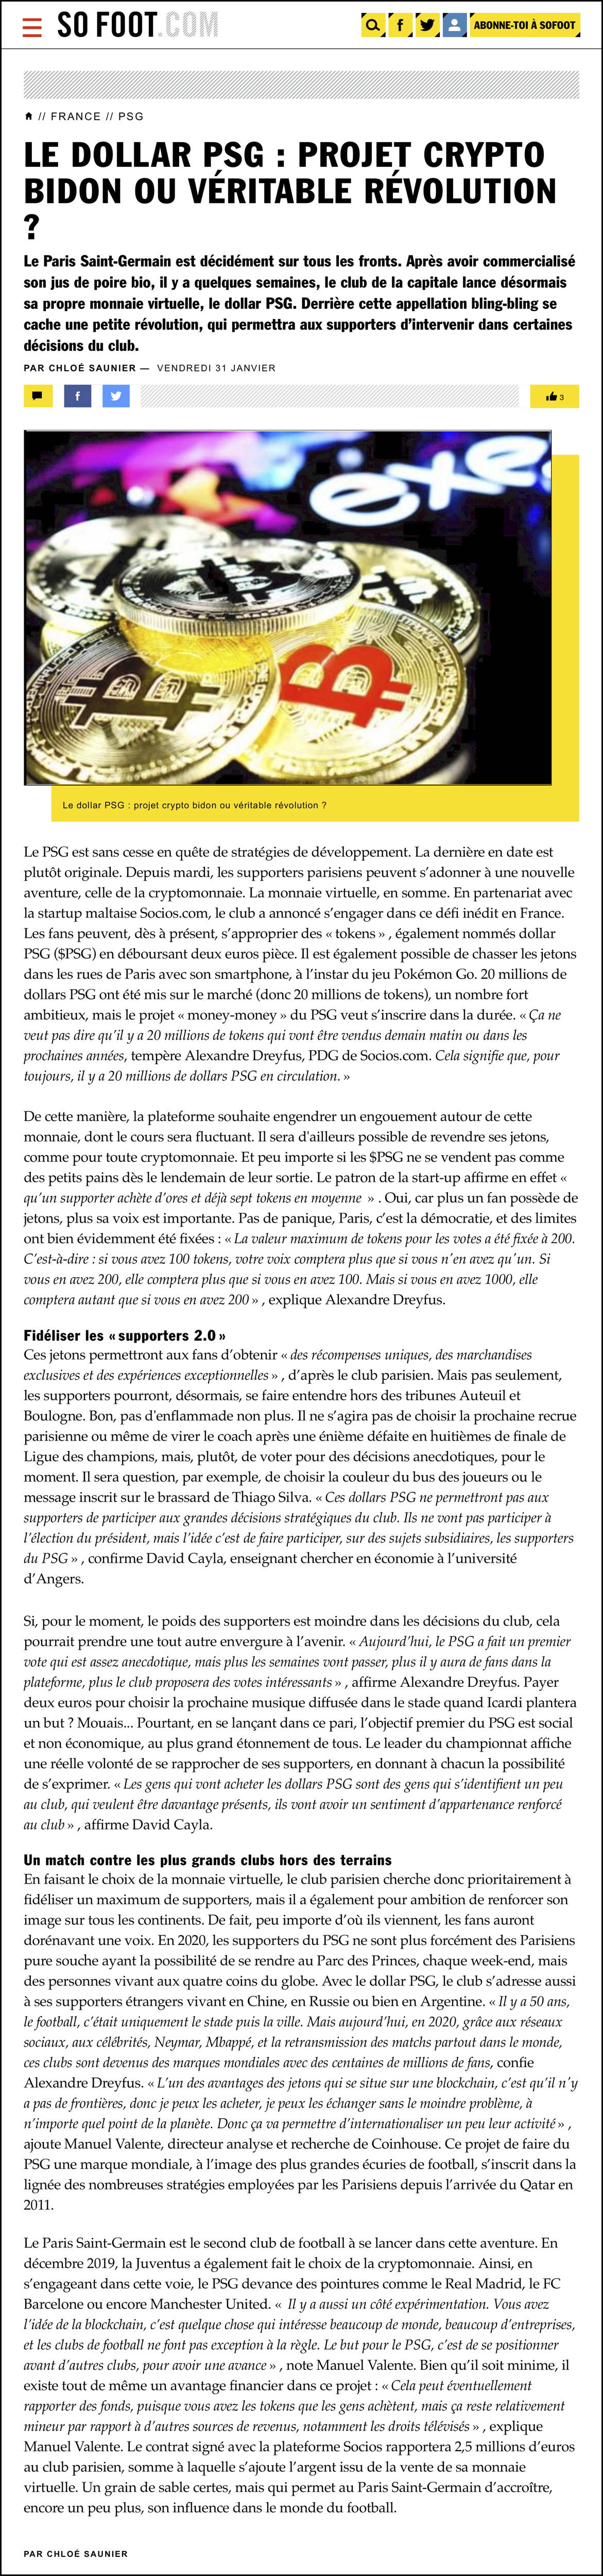 Le dollar PSG - projet crypto bidon ou véritable révolution ? - France - PSG - SOFOOT.com ().jpg